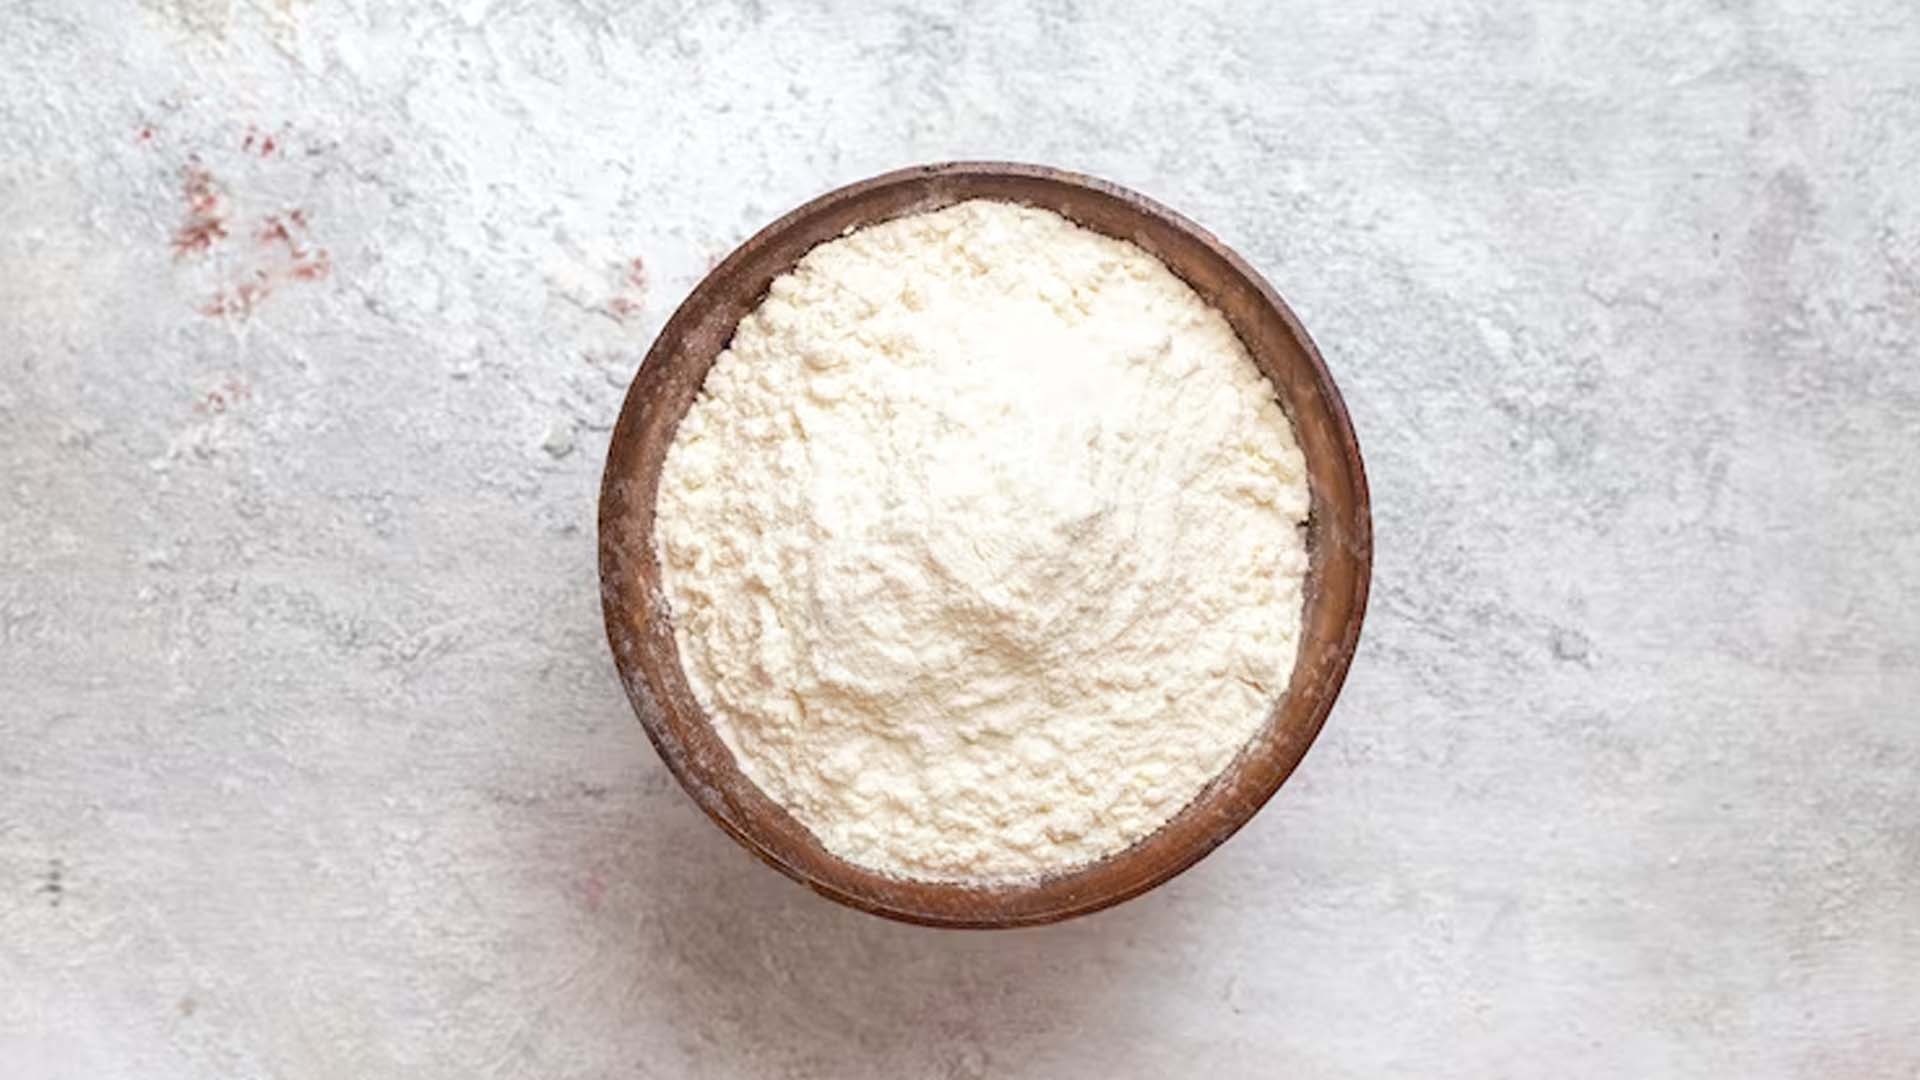 Nutritional values of Jowar Flour